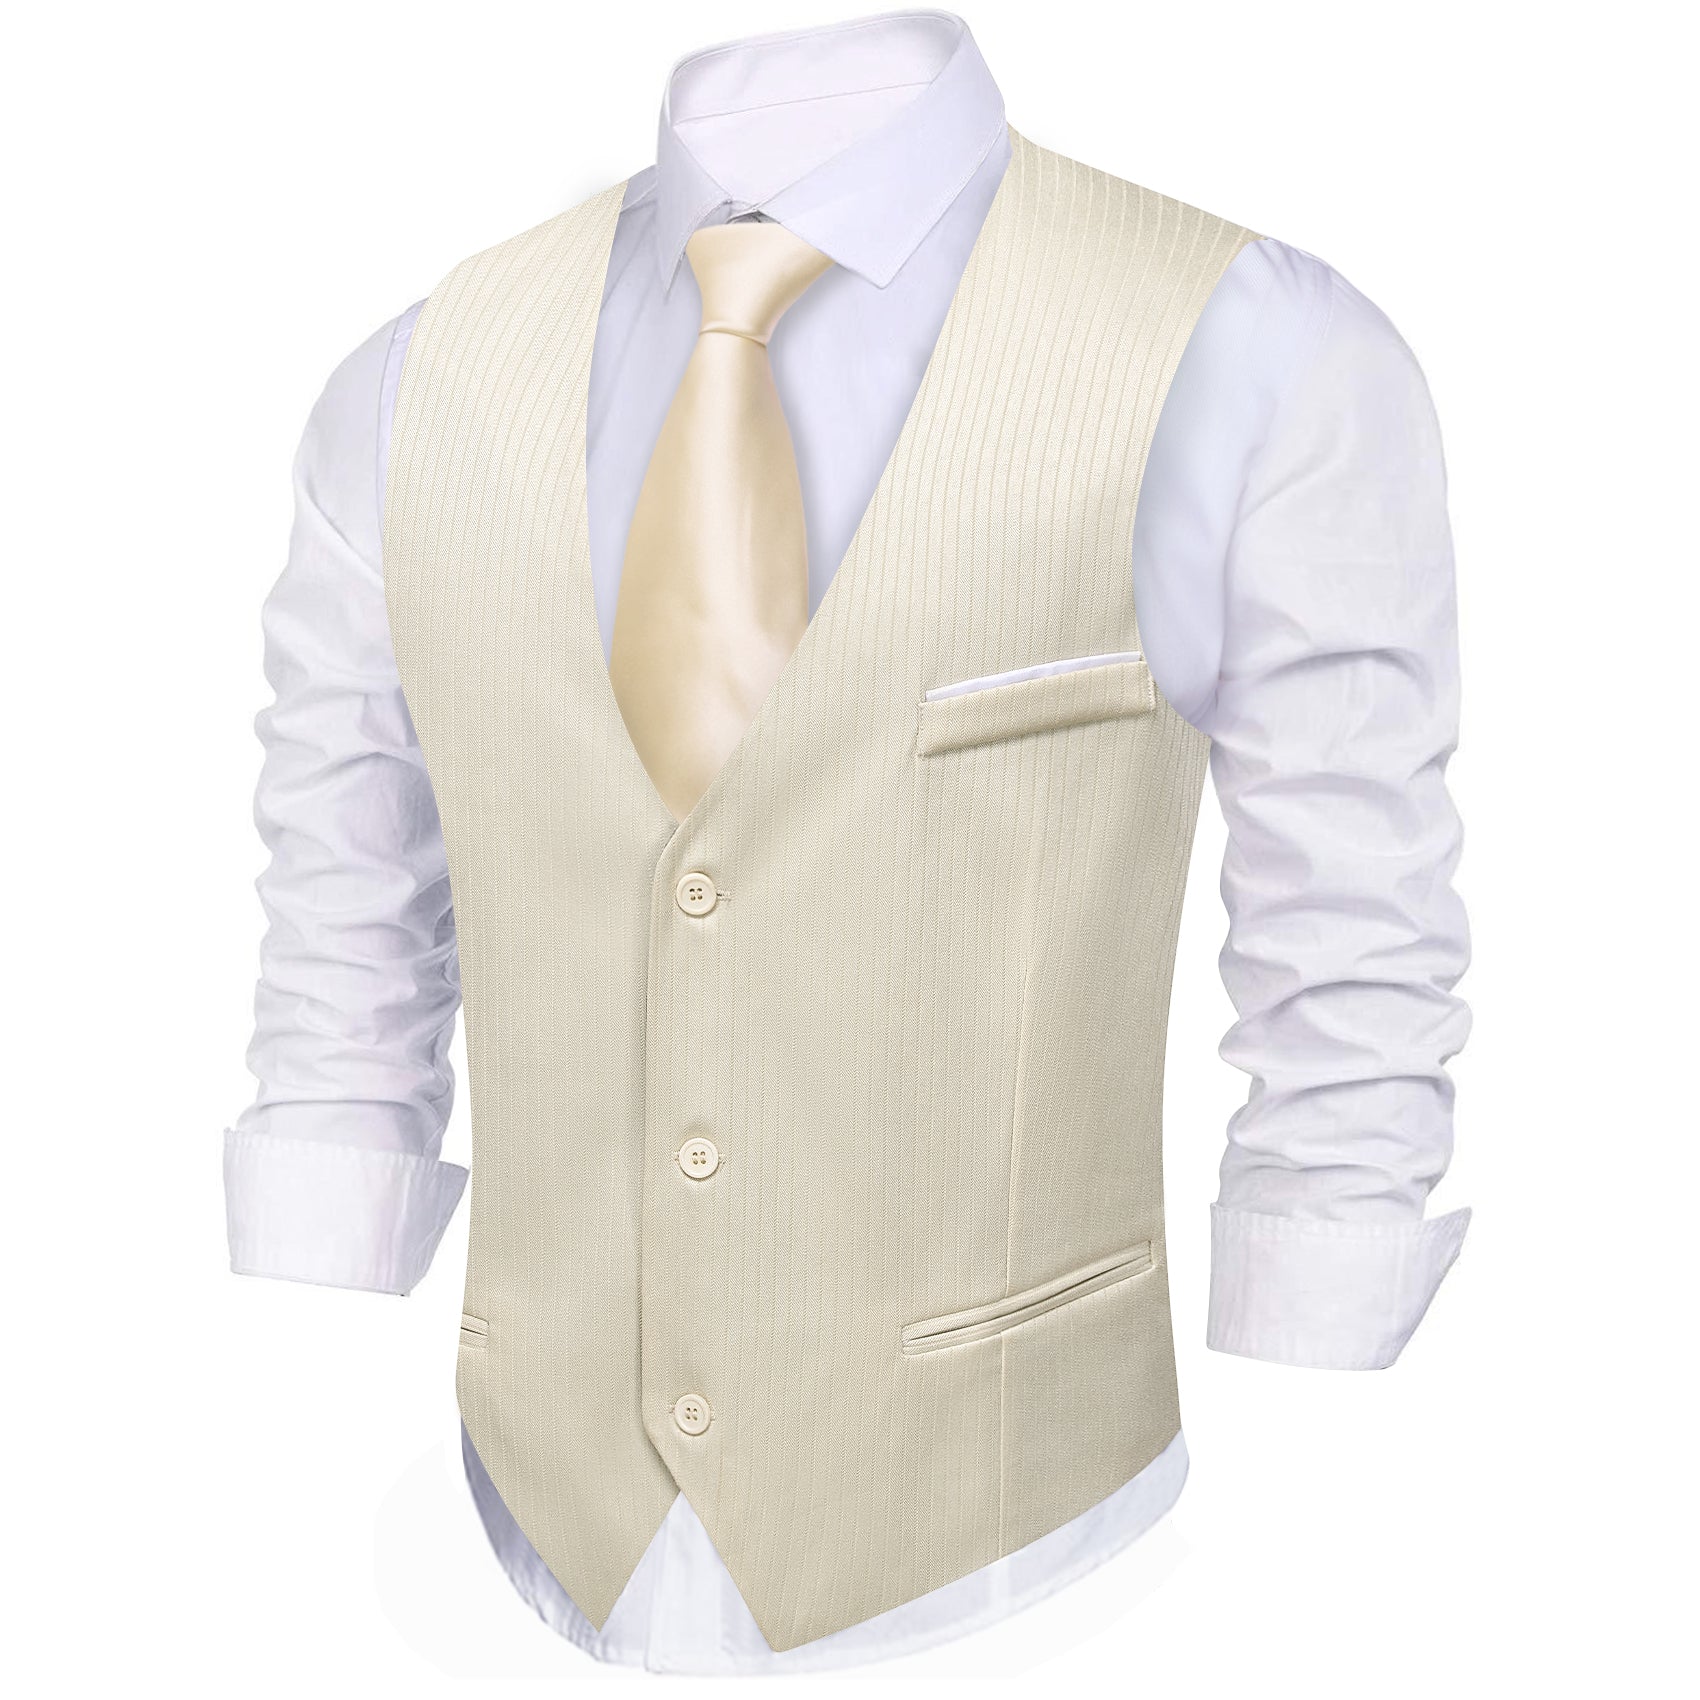 Barry.wang Linen Solid Business Vest Suit